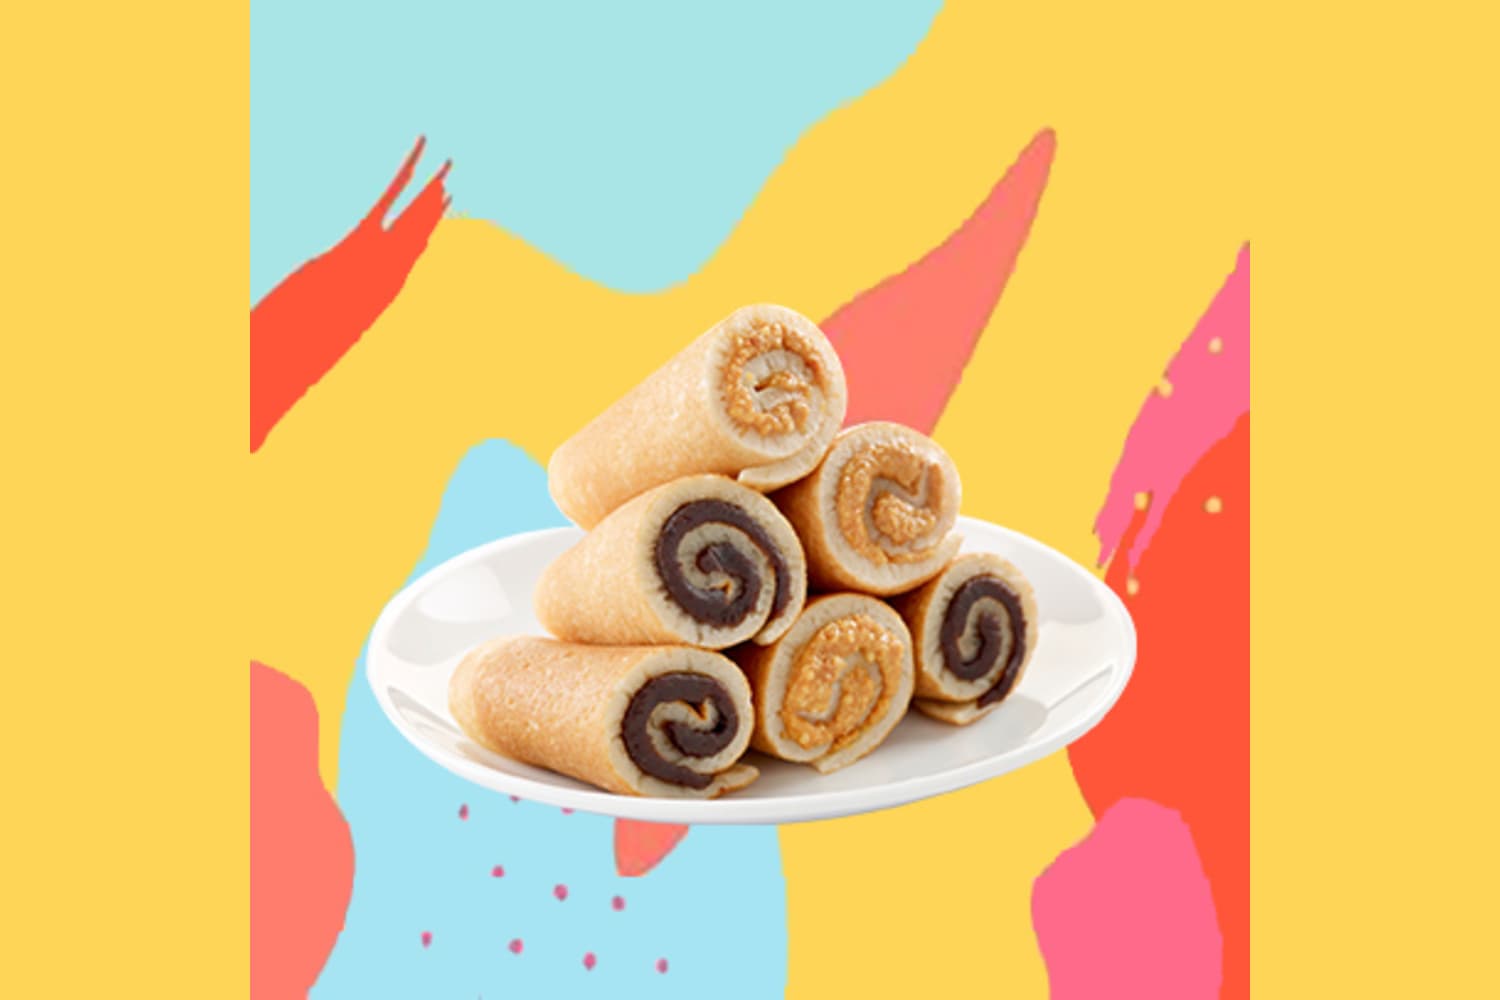 6-in-1 mixed mini rolls dessert - exclusive deal